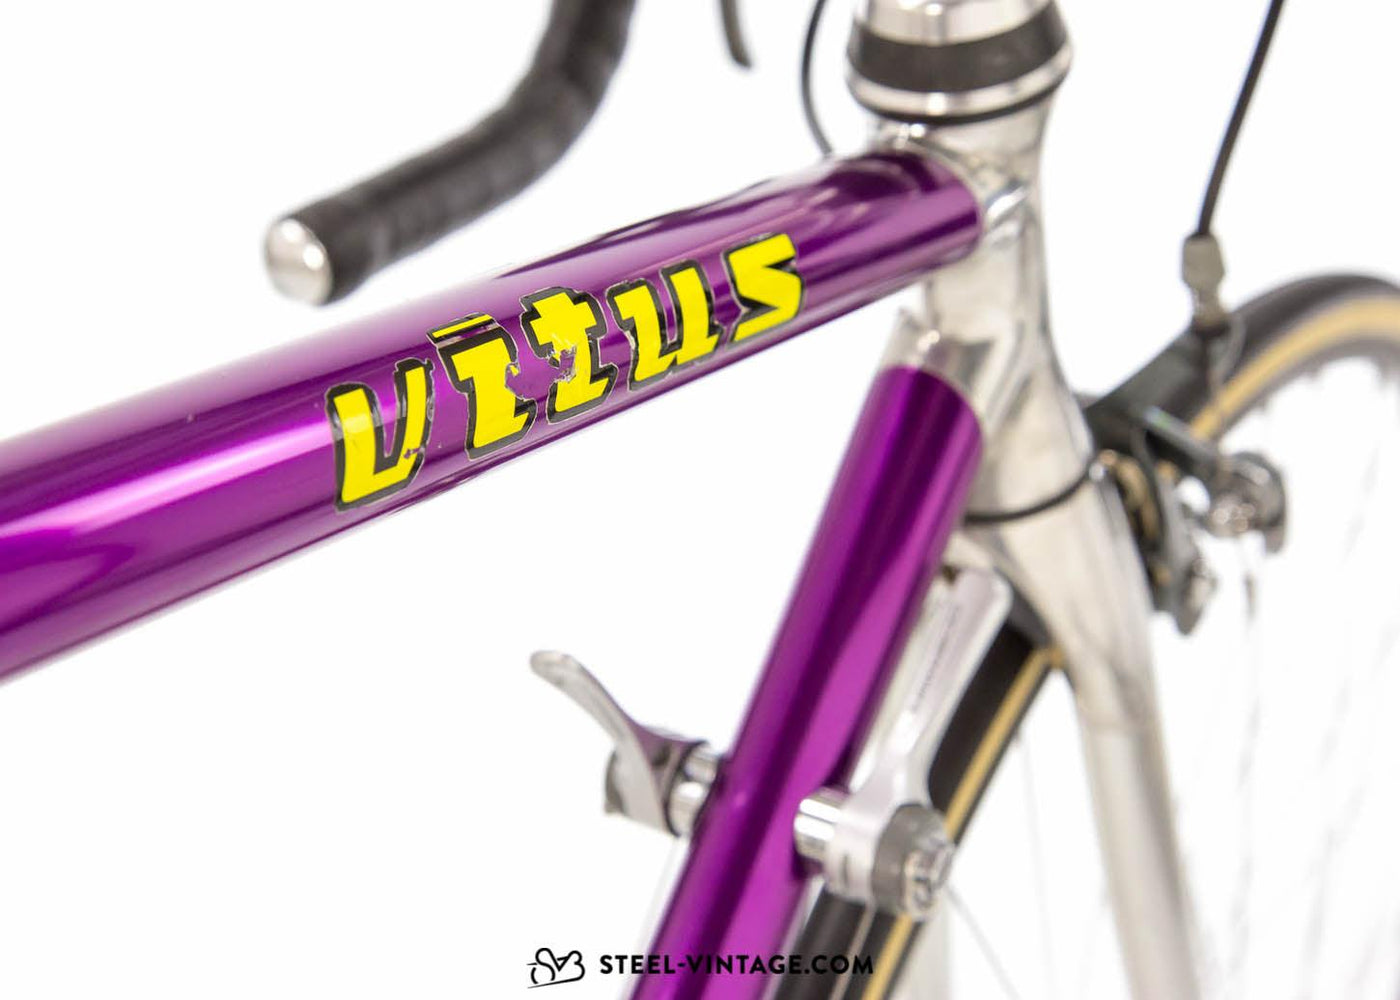 Vitus 992 Classic Road Bike Early 1990s - Steel Vintage Bikes